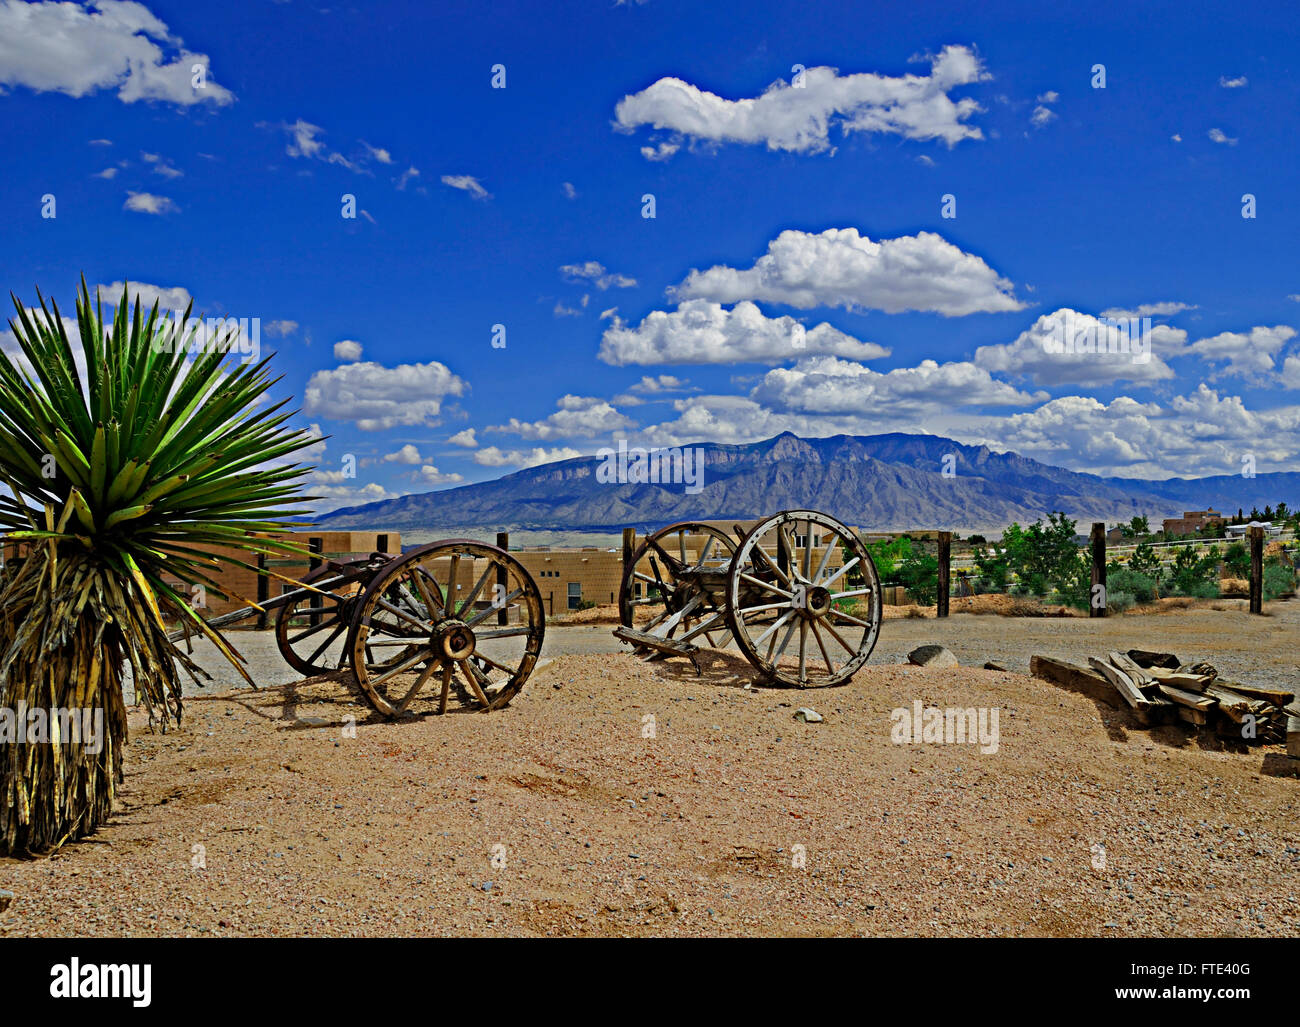 Sandia mountains from Rio Rancho, New Mexico near Albuquerque. Stock Photo